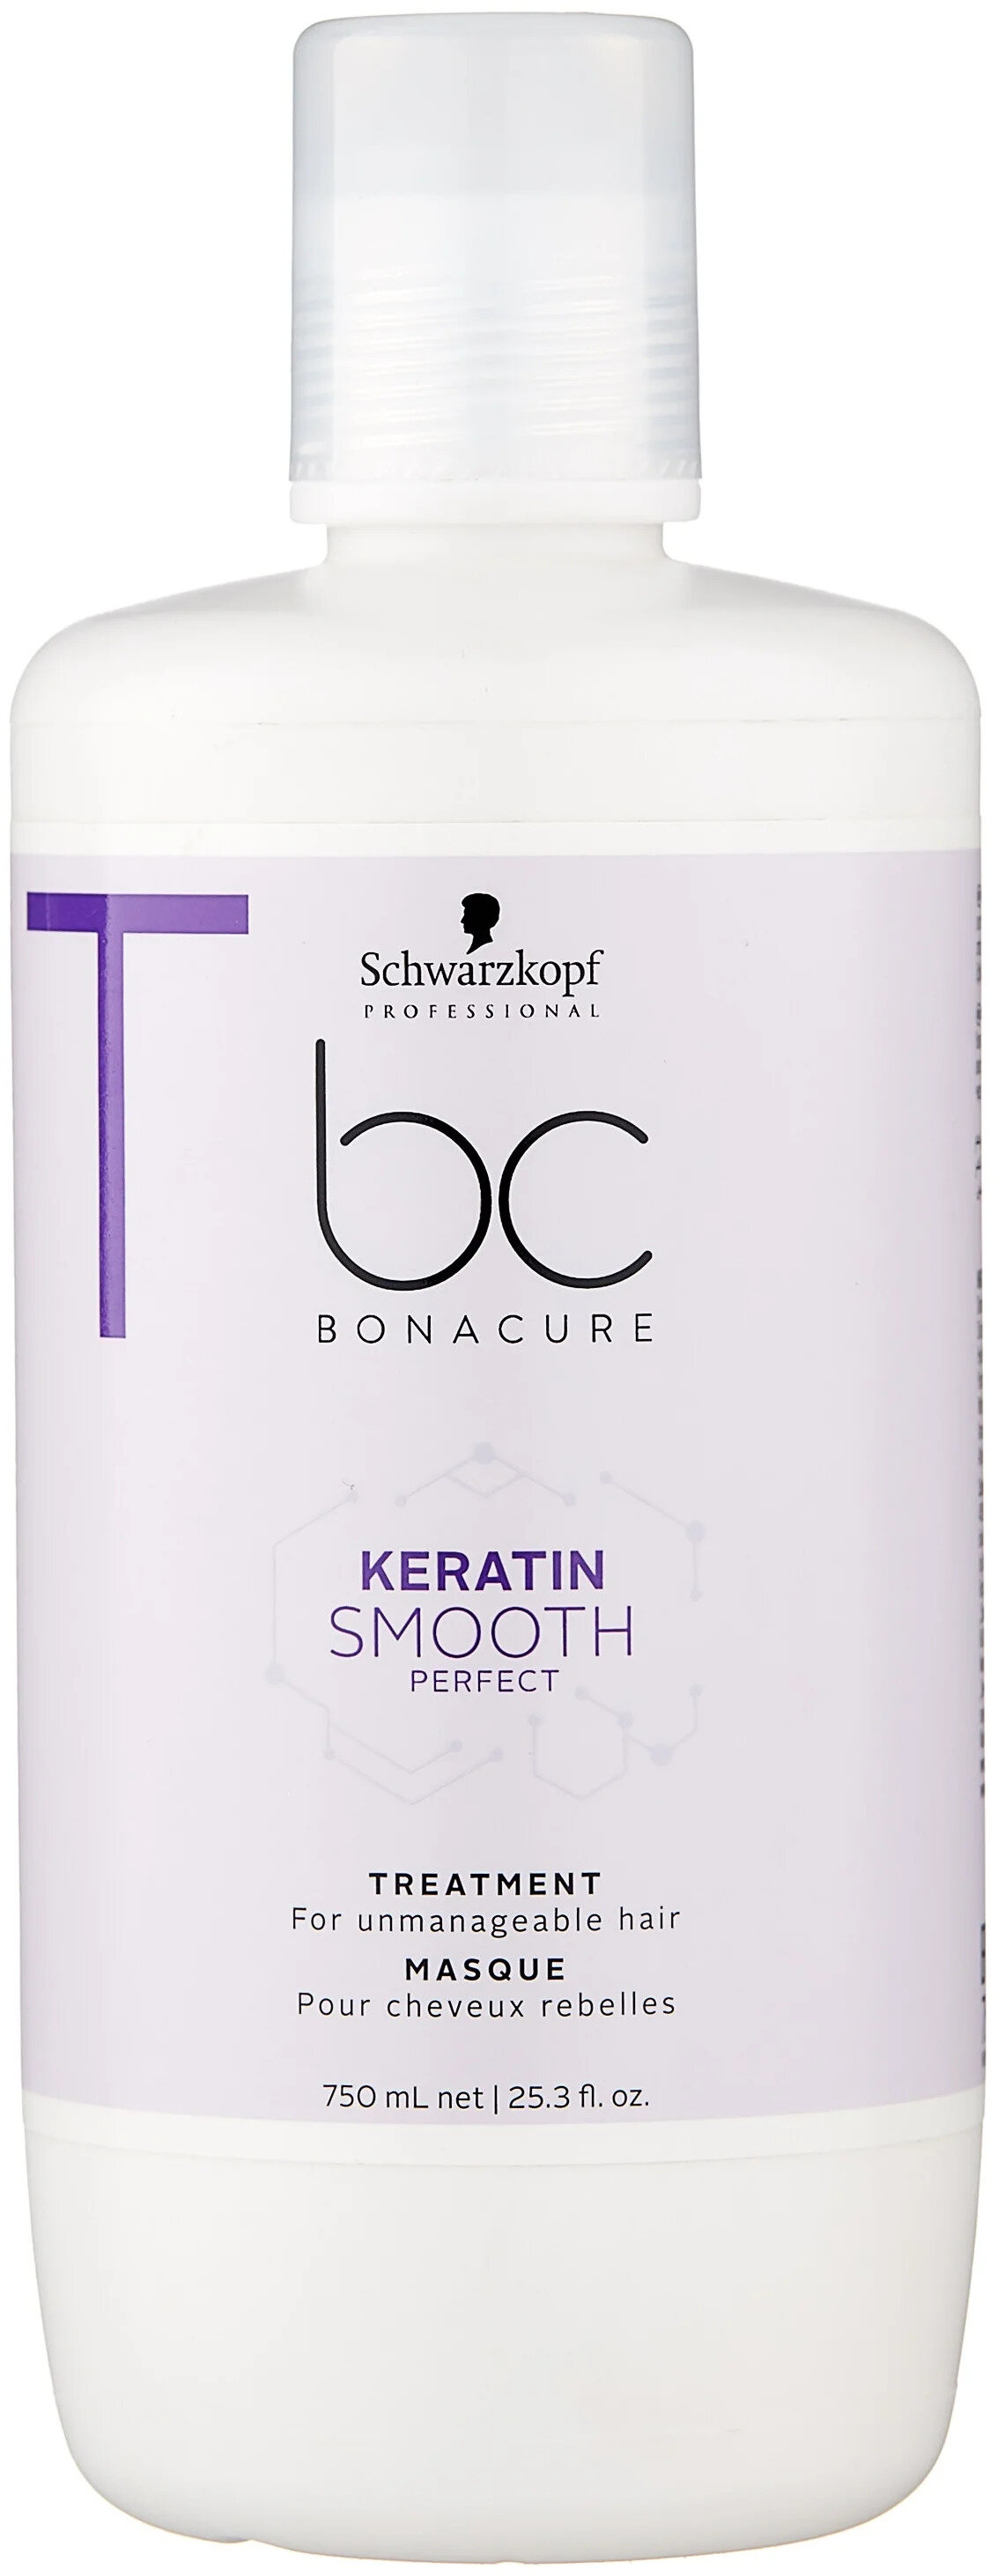 Маска для волос разглаживающая Schwarzkopf Professional Bonacure Keratin Smooth Perfect Идеальная гладкость 750 мл